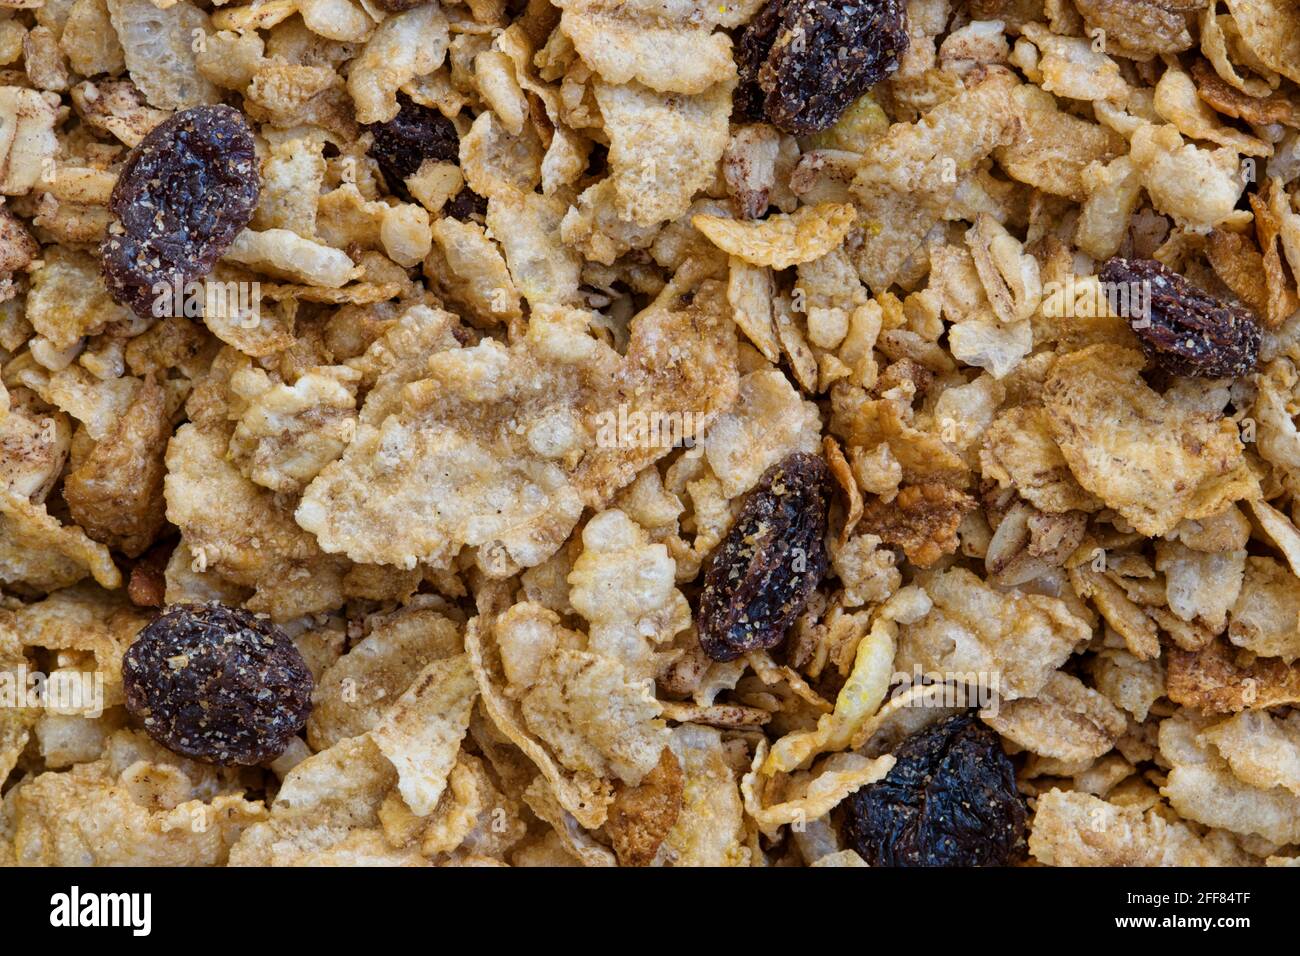 Cereali secchi grani interi con uvetta, granola e fiocchi d'avena immagine di fondo del concetto di colazione. Foto Stock